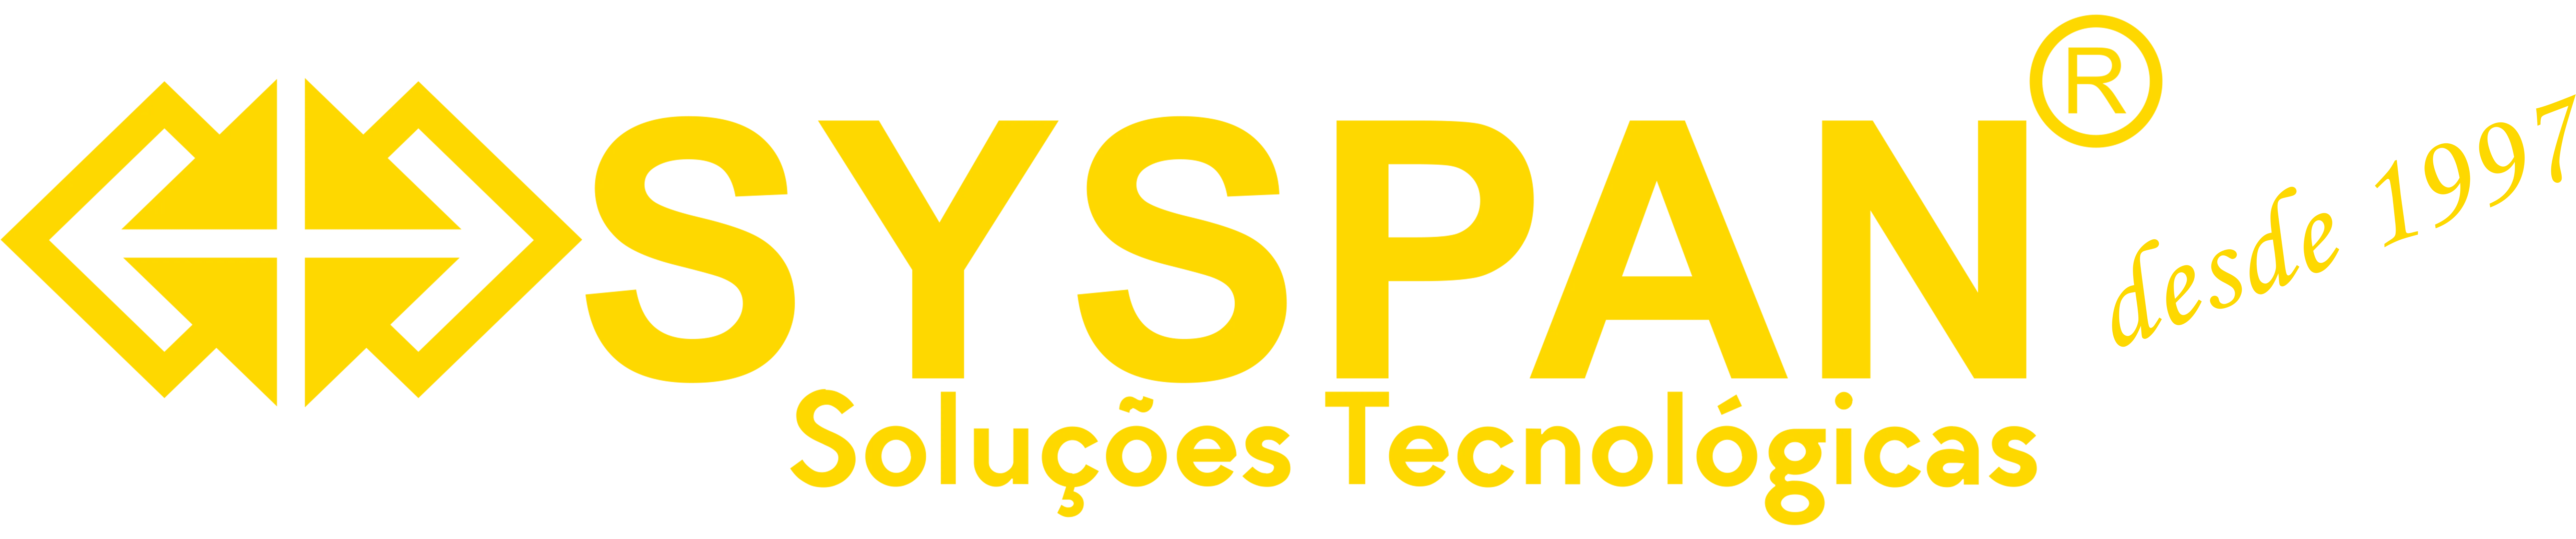 Logo SYSPAN